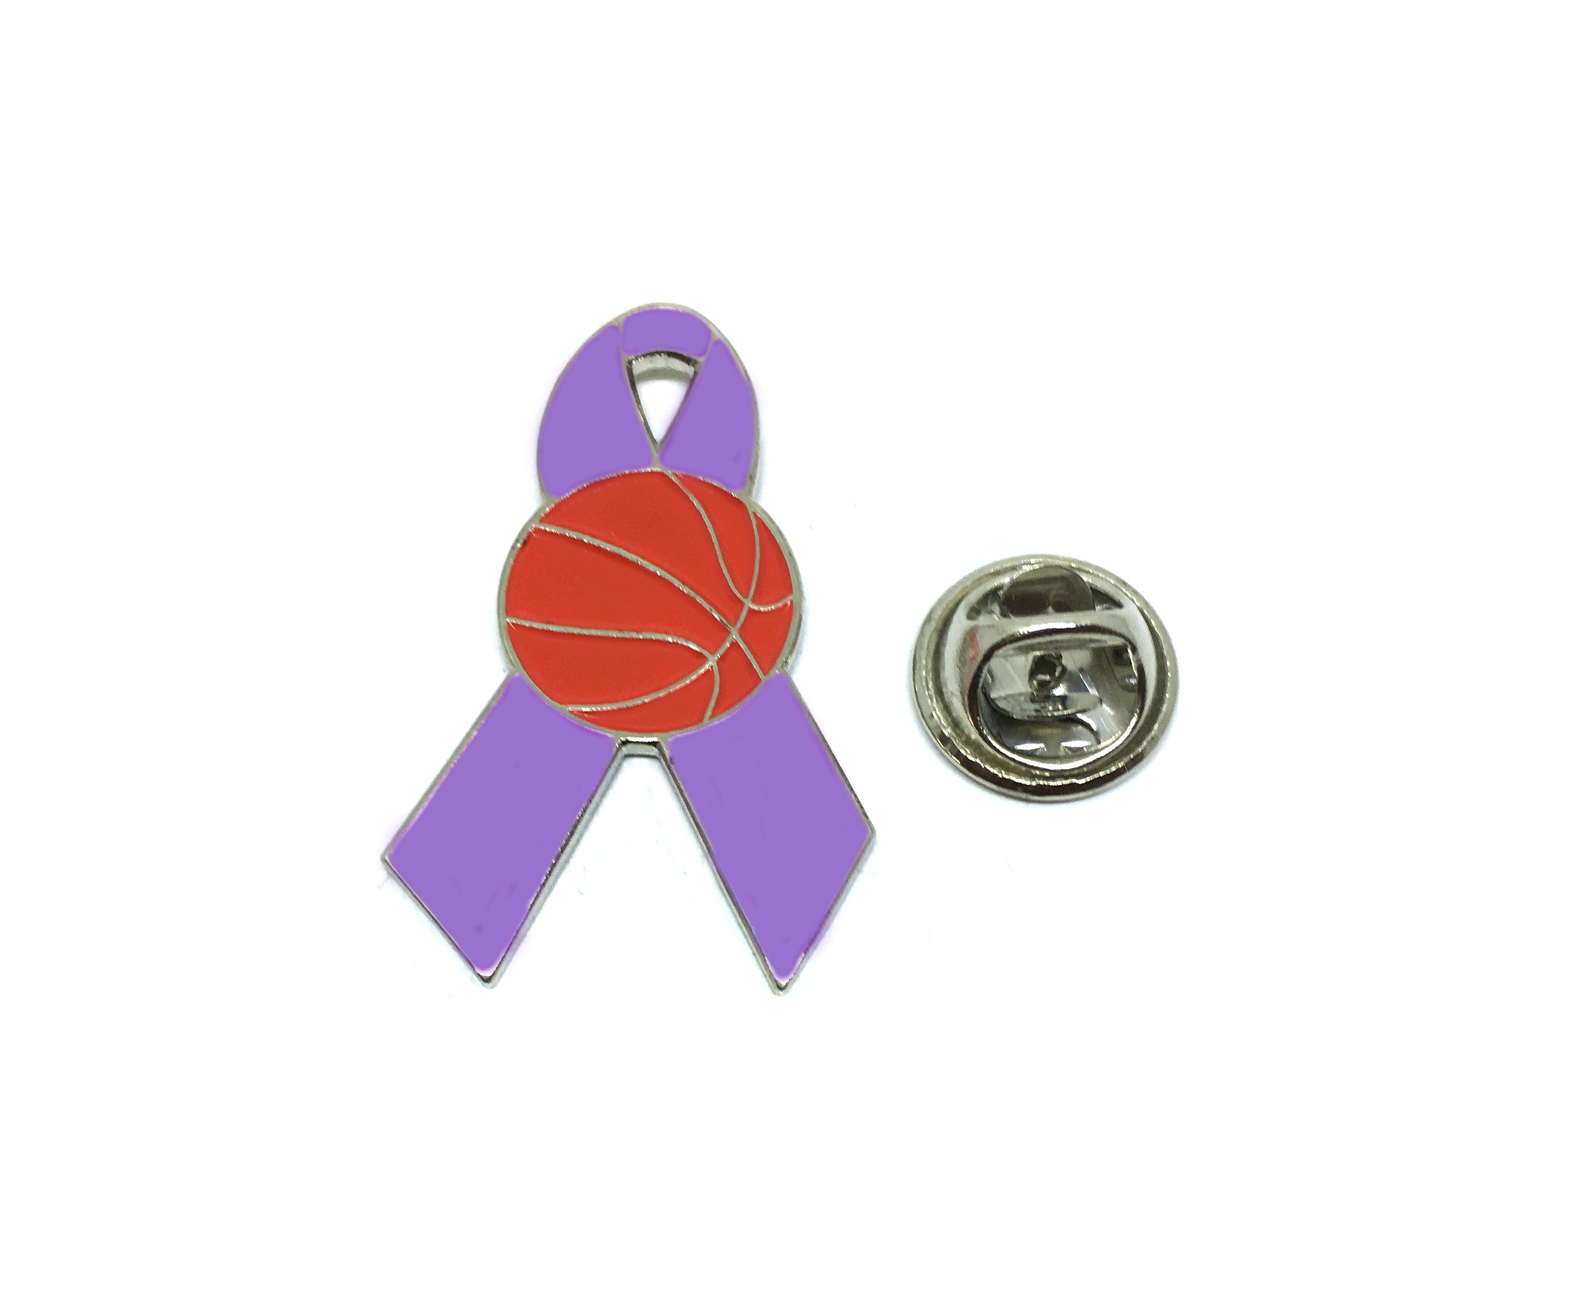 Cancer Ribbon Basketball Pin